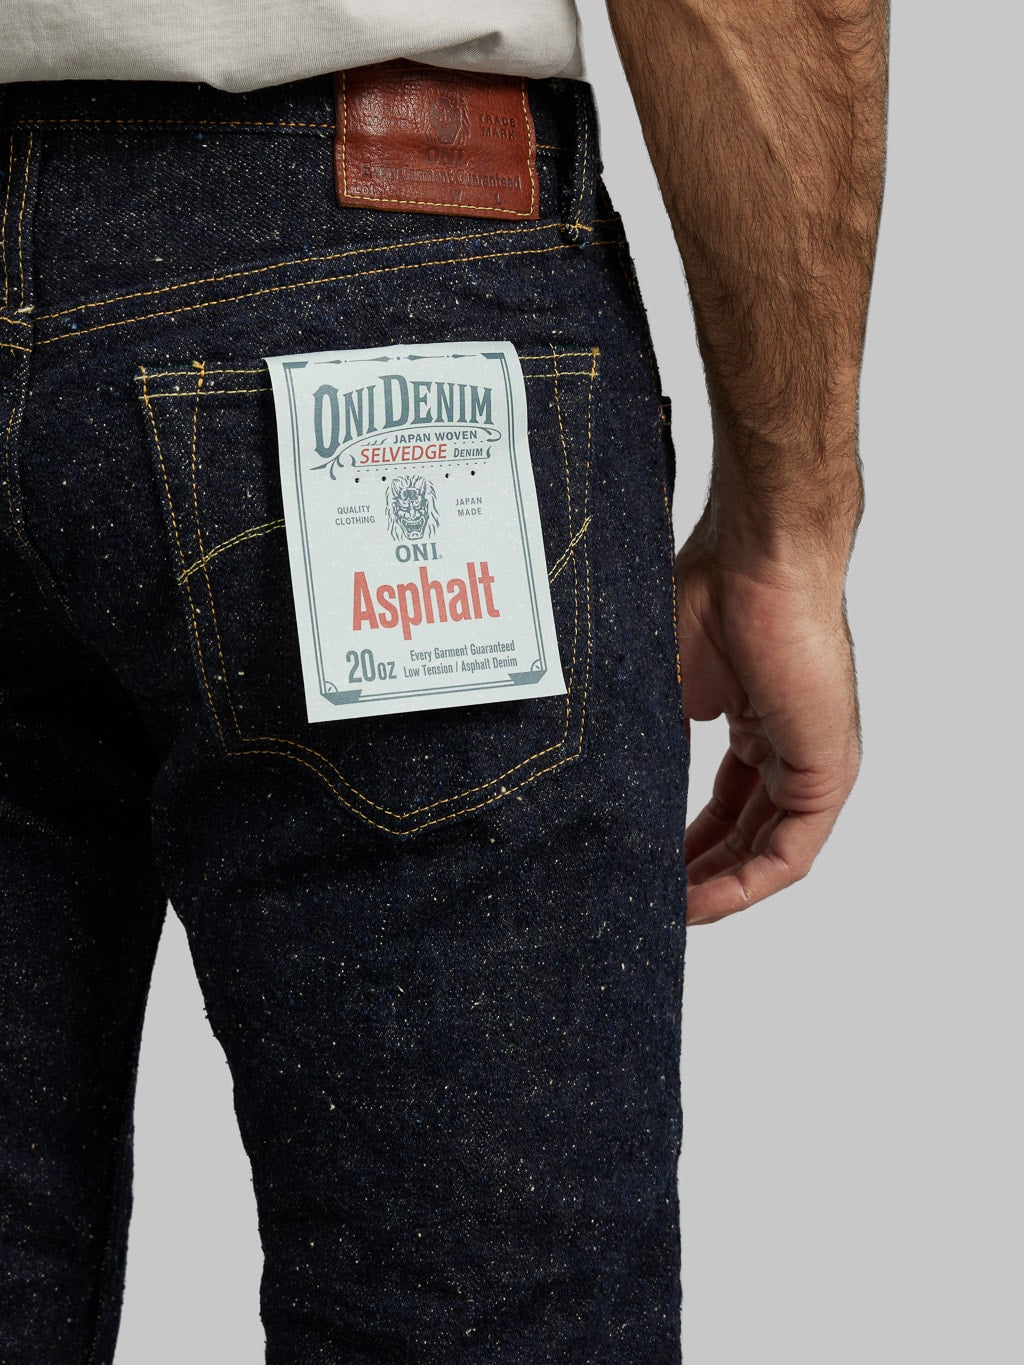 ONI Denim 544 Asphalt 20oz Stylish Tapered Jeans pocket flasher